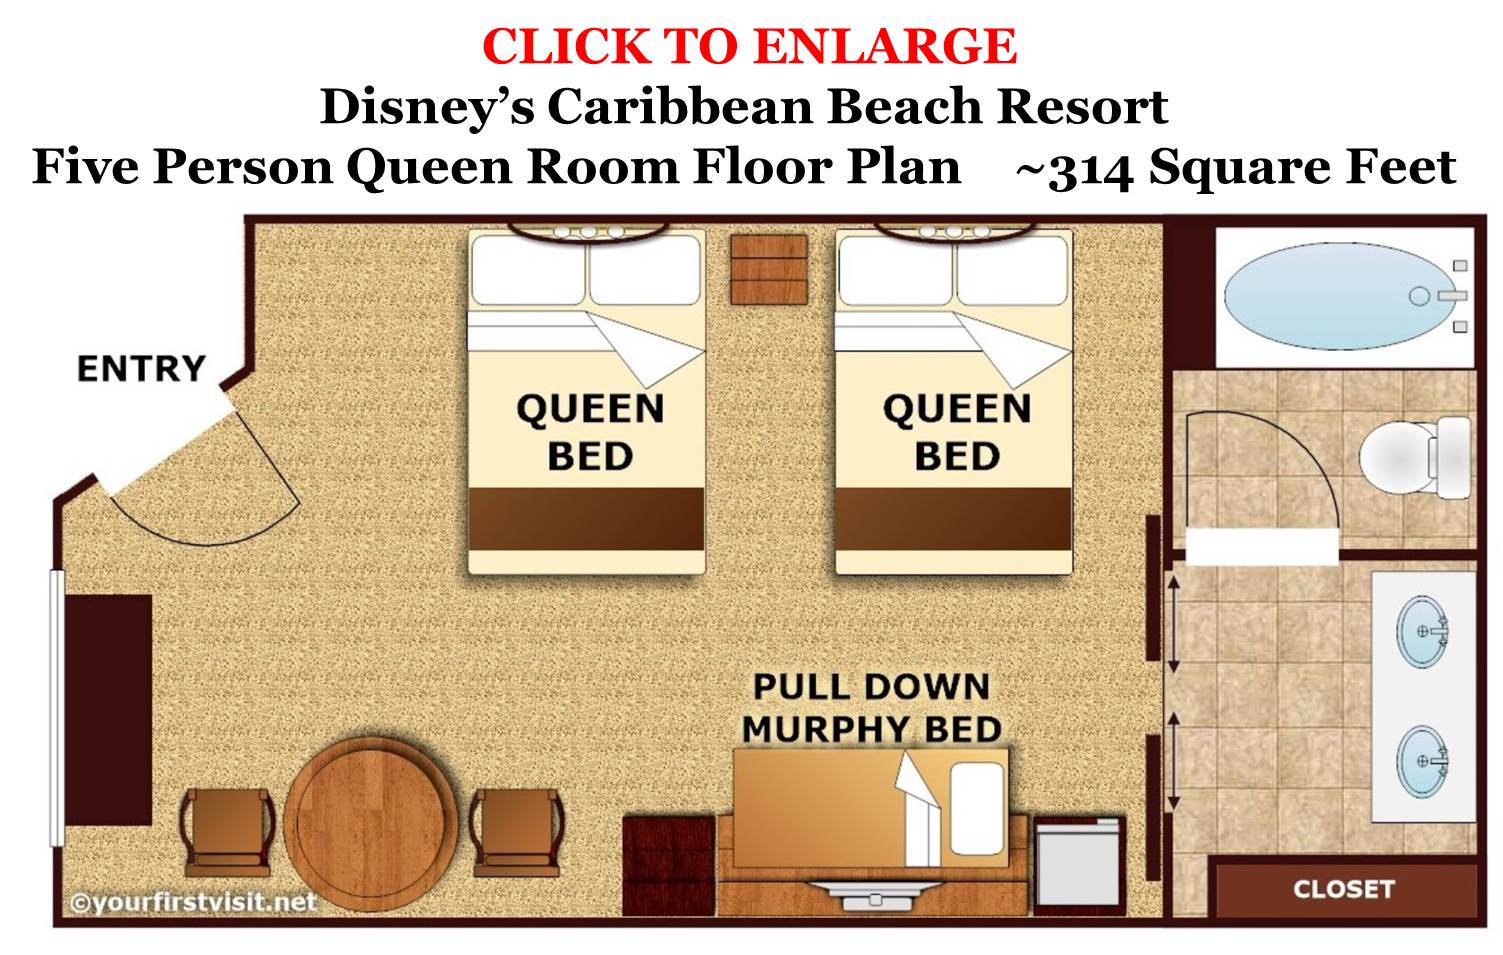 Five Person Queen Room Floor Plan Disney's Caribbean Beach Resort from yourfirstvisit.net